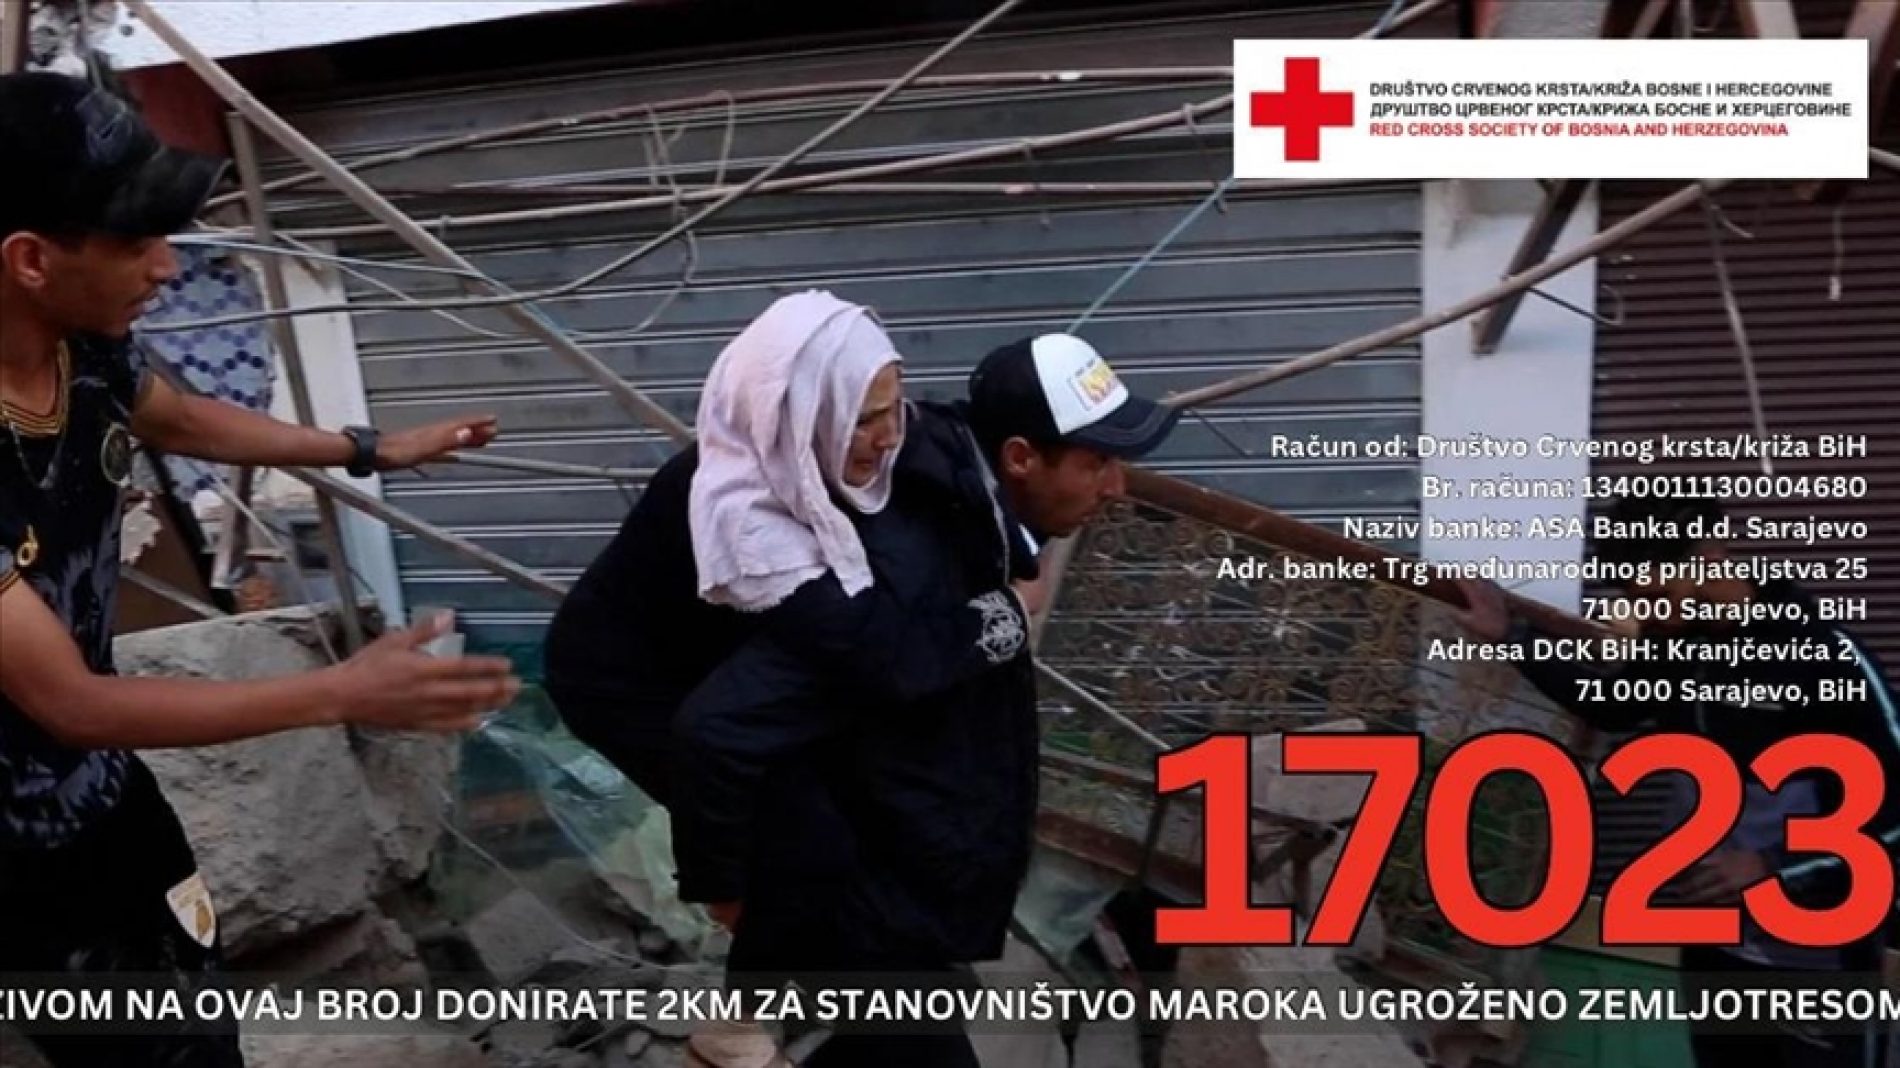 Društvo Crvenog krsta/križa BiH aktiviralo humanitarni broj za stanovništvo Maroka